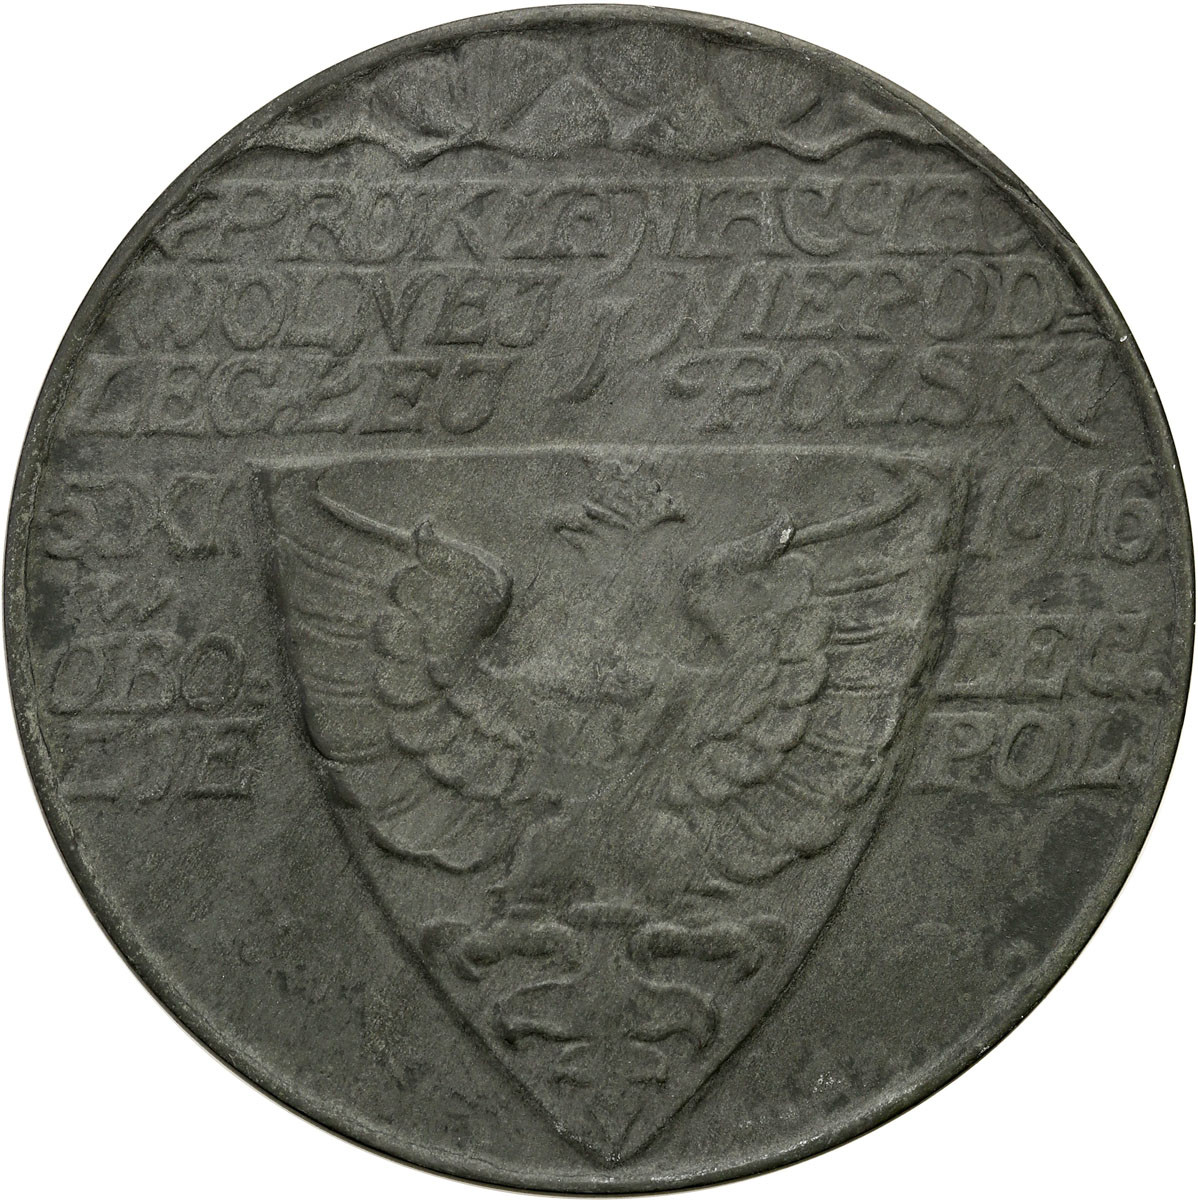 Polska pod zaborami. Medal 1916, Wiedeń - Ogłoszenie Niepodległości Polski Wiedeń, cynk